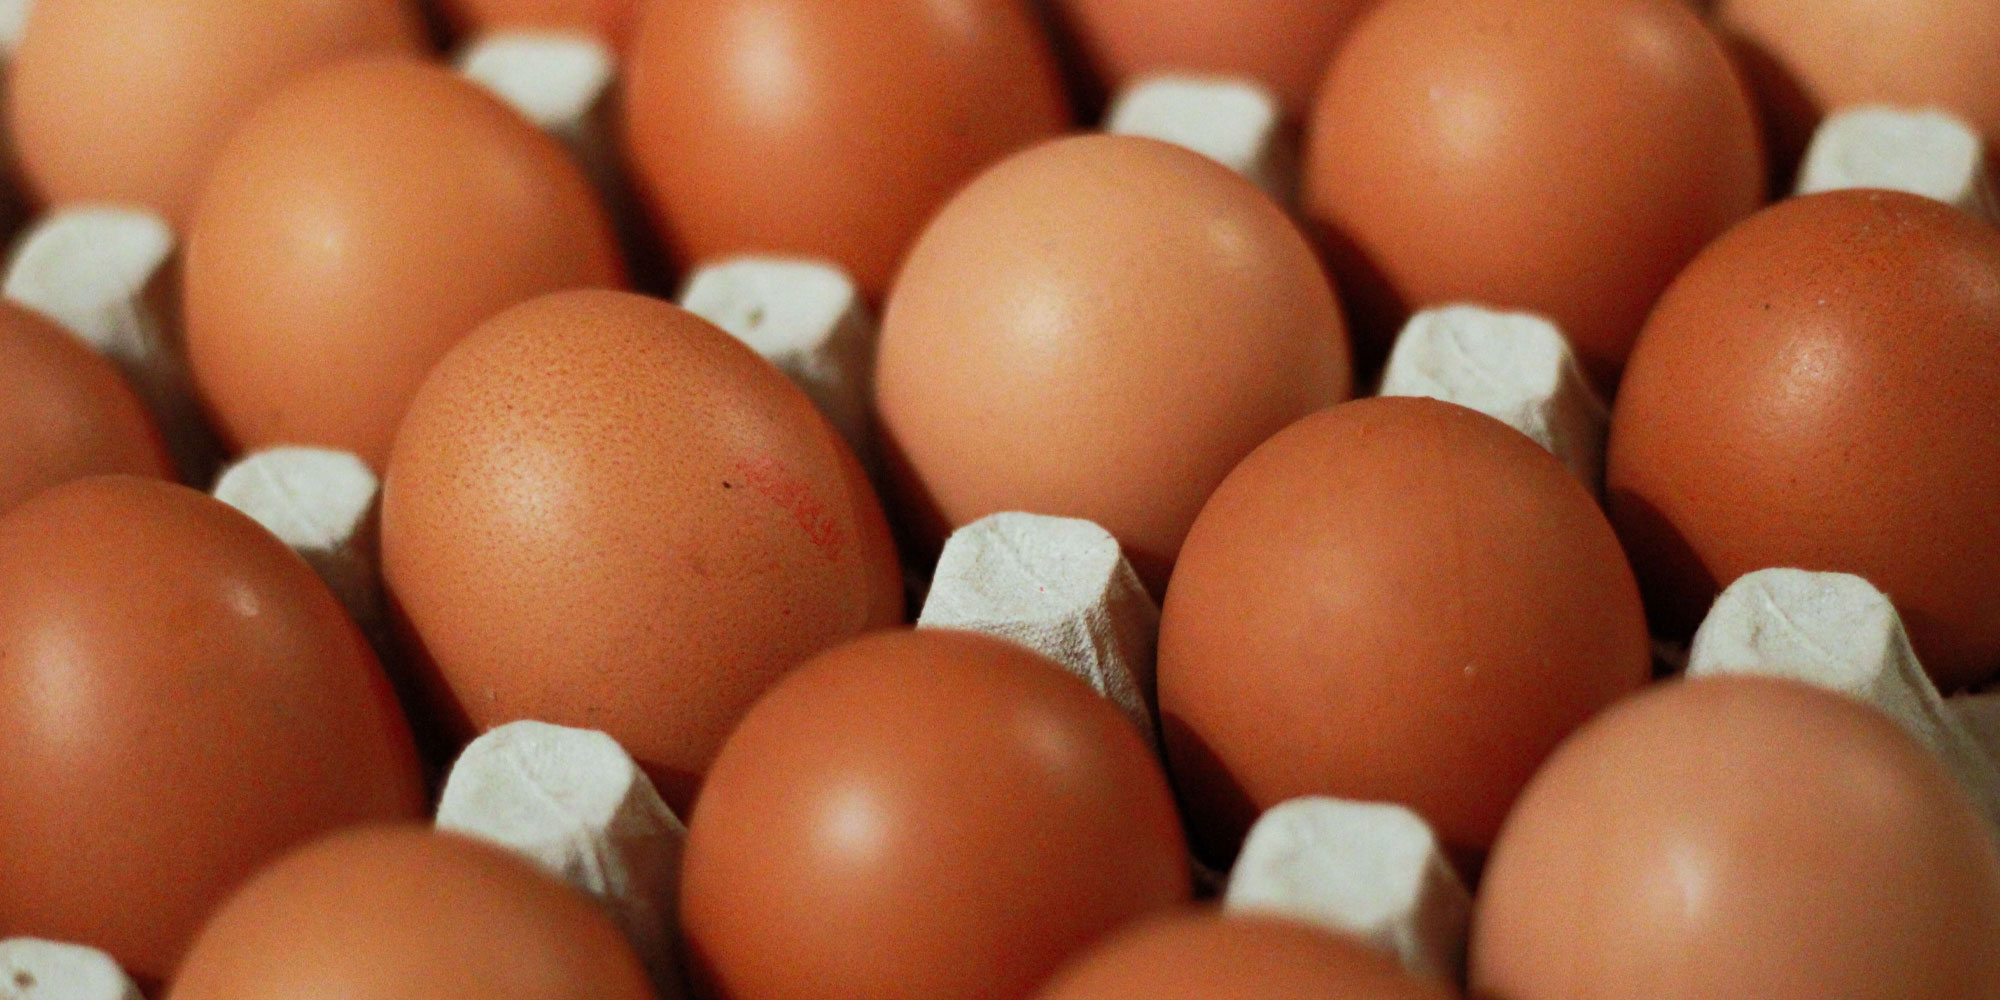 Banco de Alimentos de Zaragoza recibe una donación de huevos